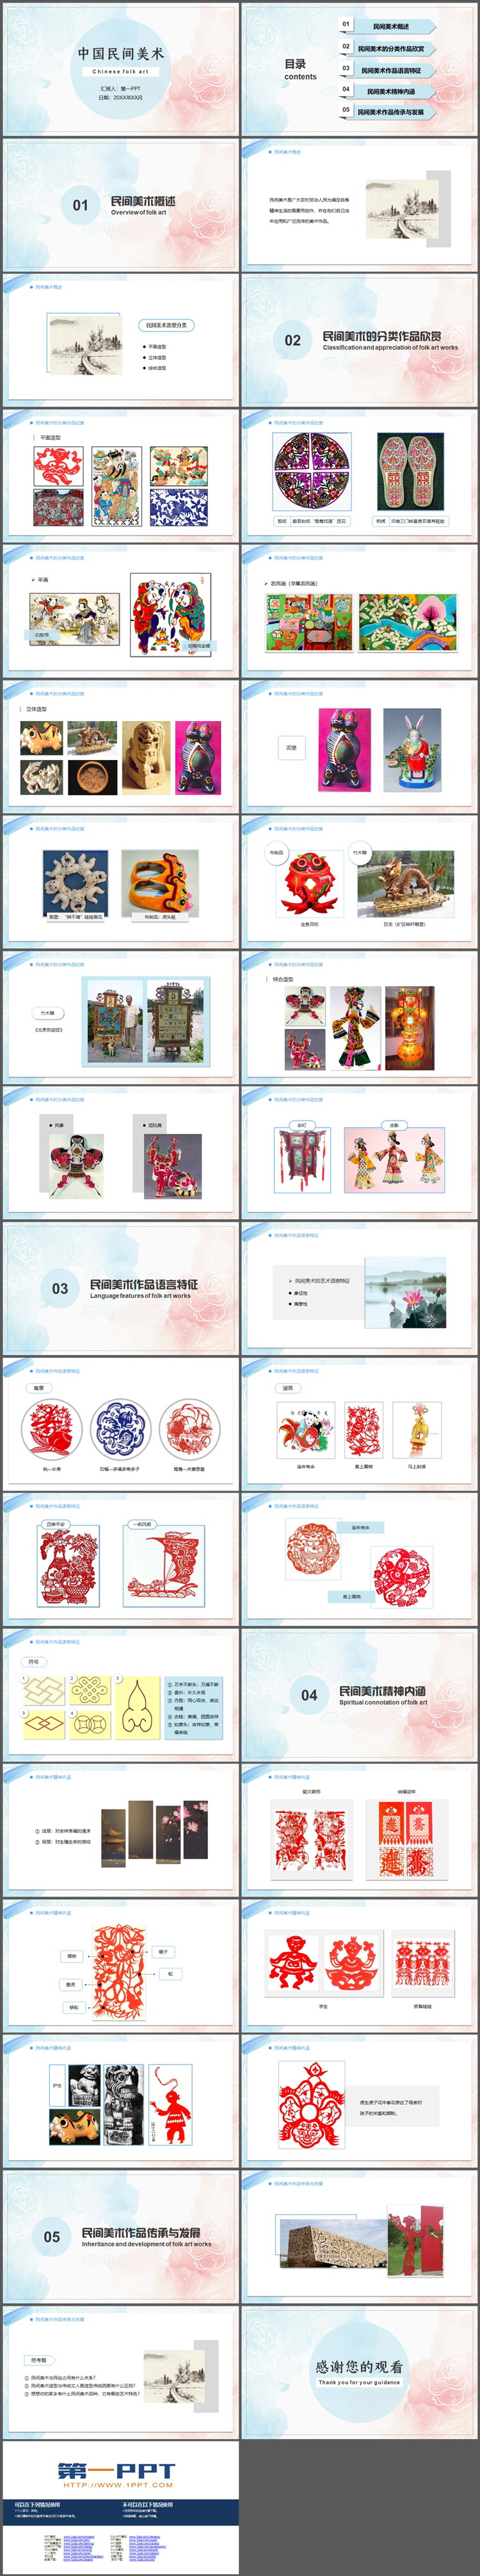 红蓝水彩花朵背景的中国民间美术PPT模板下载